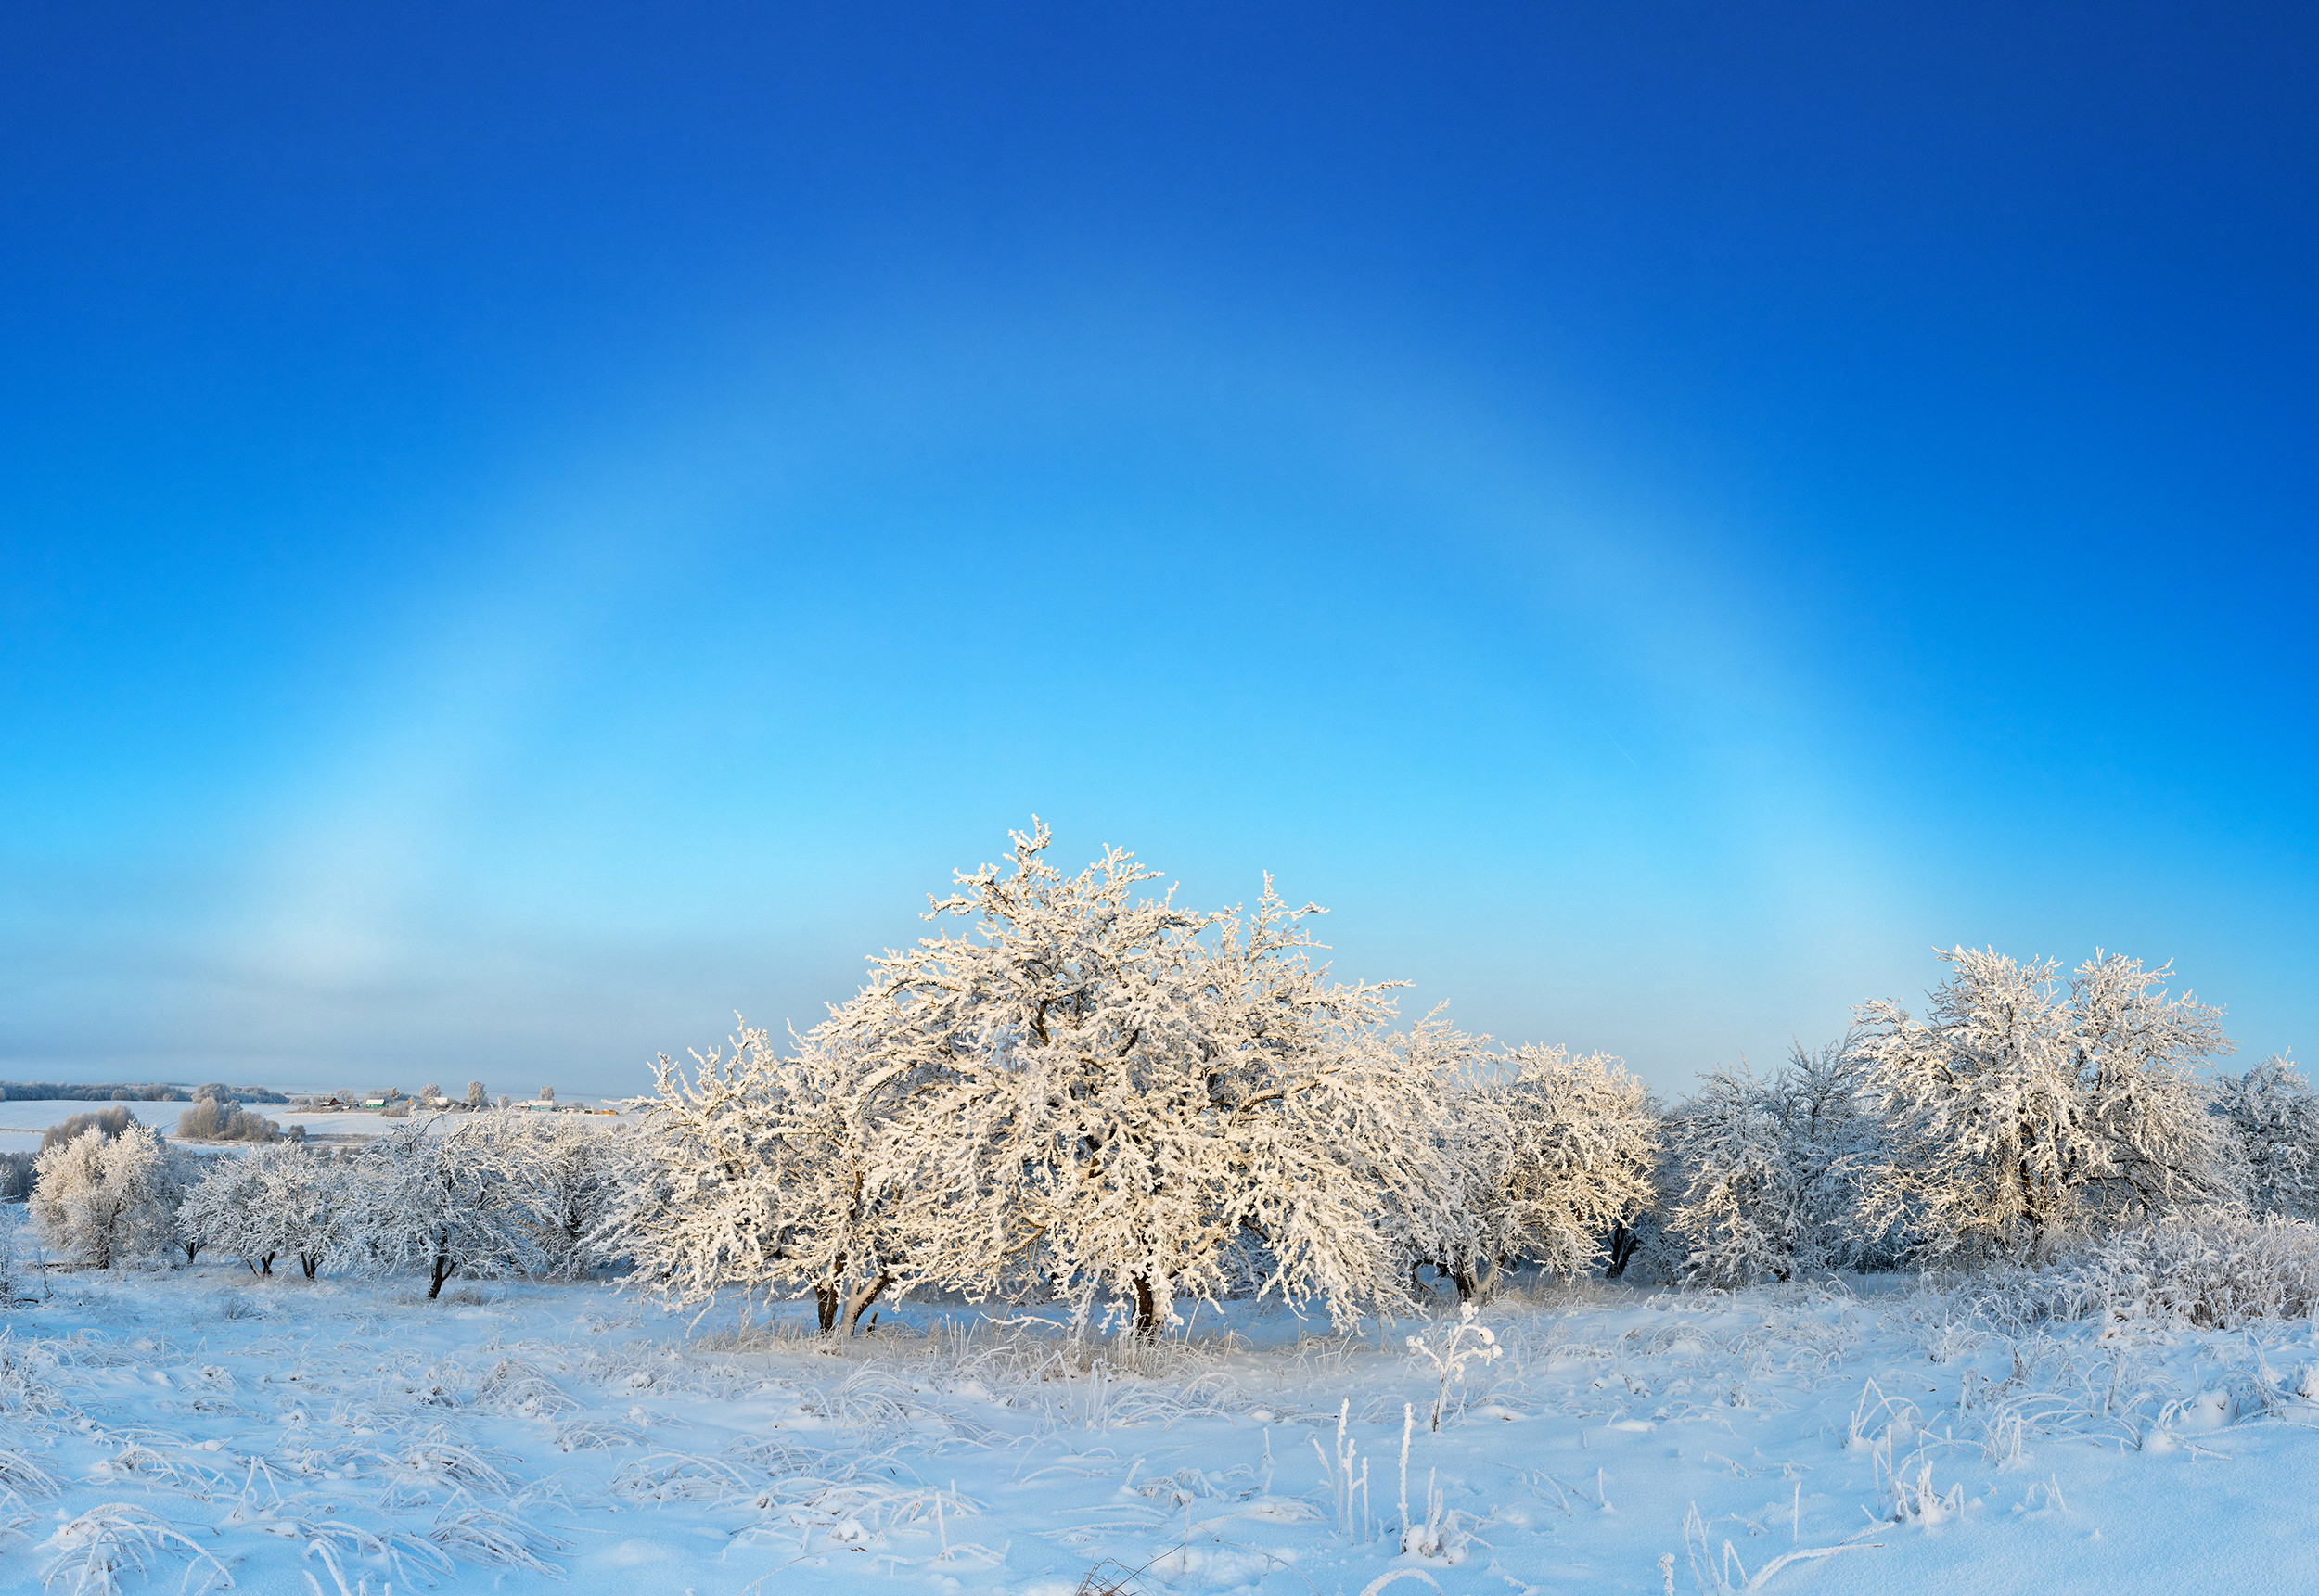 Nhiếp ảnh gia Elena Belozorova đã gây được ấn tượng với ban giám khảo bằng bức ảnh tuyệt đẹp khi cầu vồng huyền ảo hiện lên trong một khu rừng phủ đầy tuyết trắng ở Croatia.